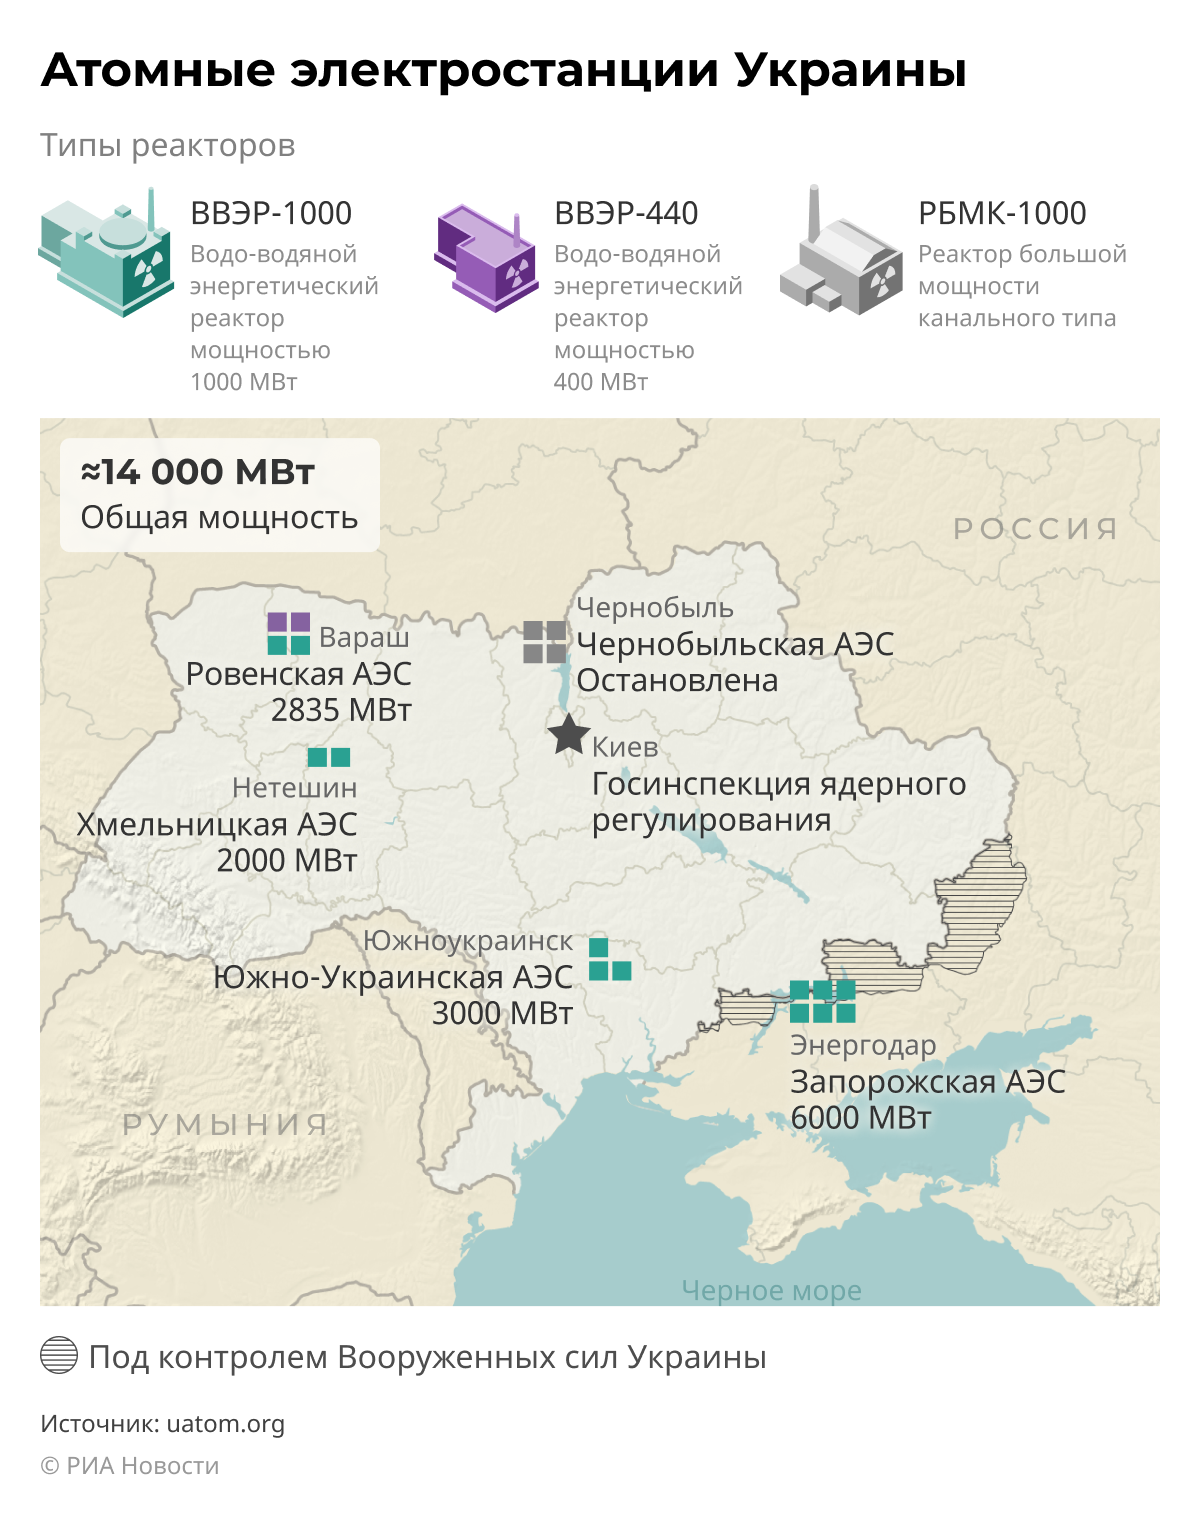 Какие электростанции на украине. АЭС Украины на карте. Атомные станции Украины на карте. Атомные электростанции Украины на карте. Атомные станции Украины на карте действующие на 2022.